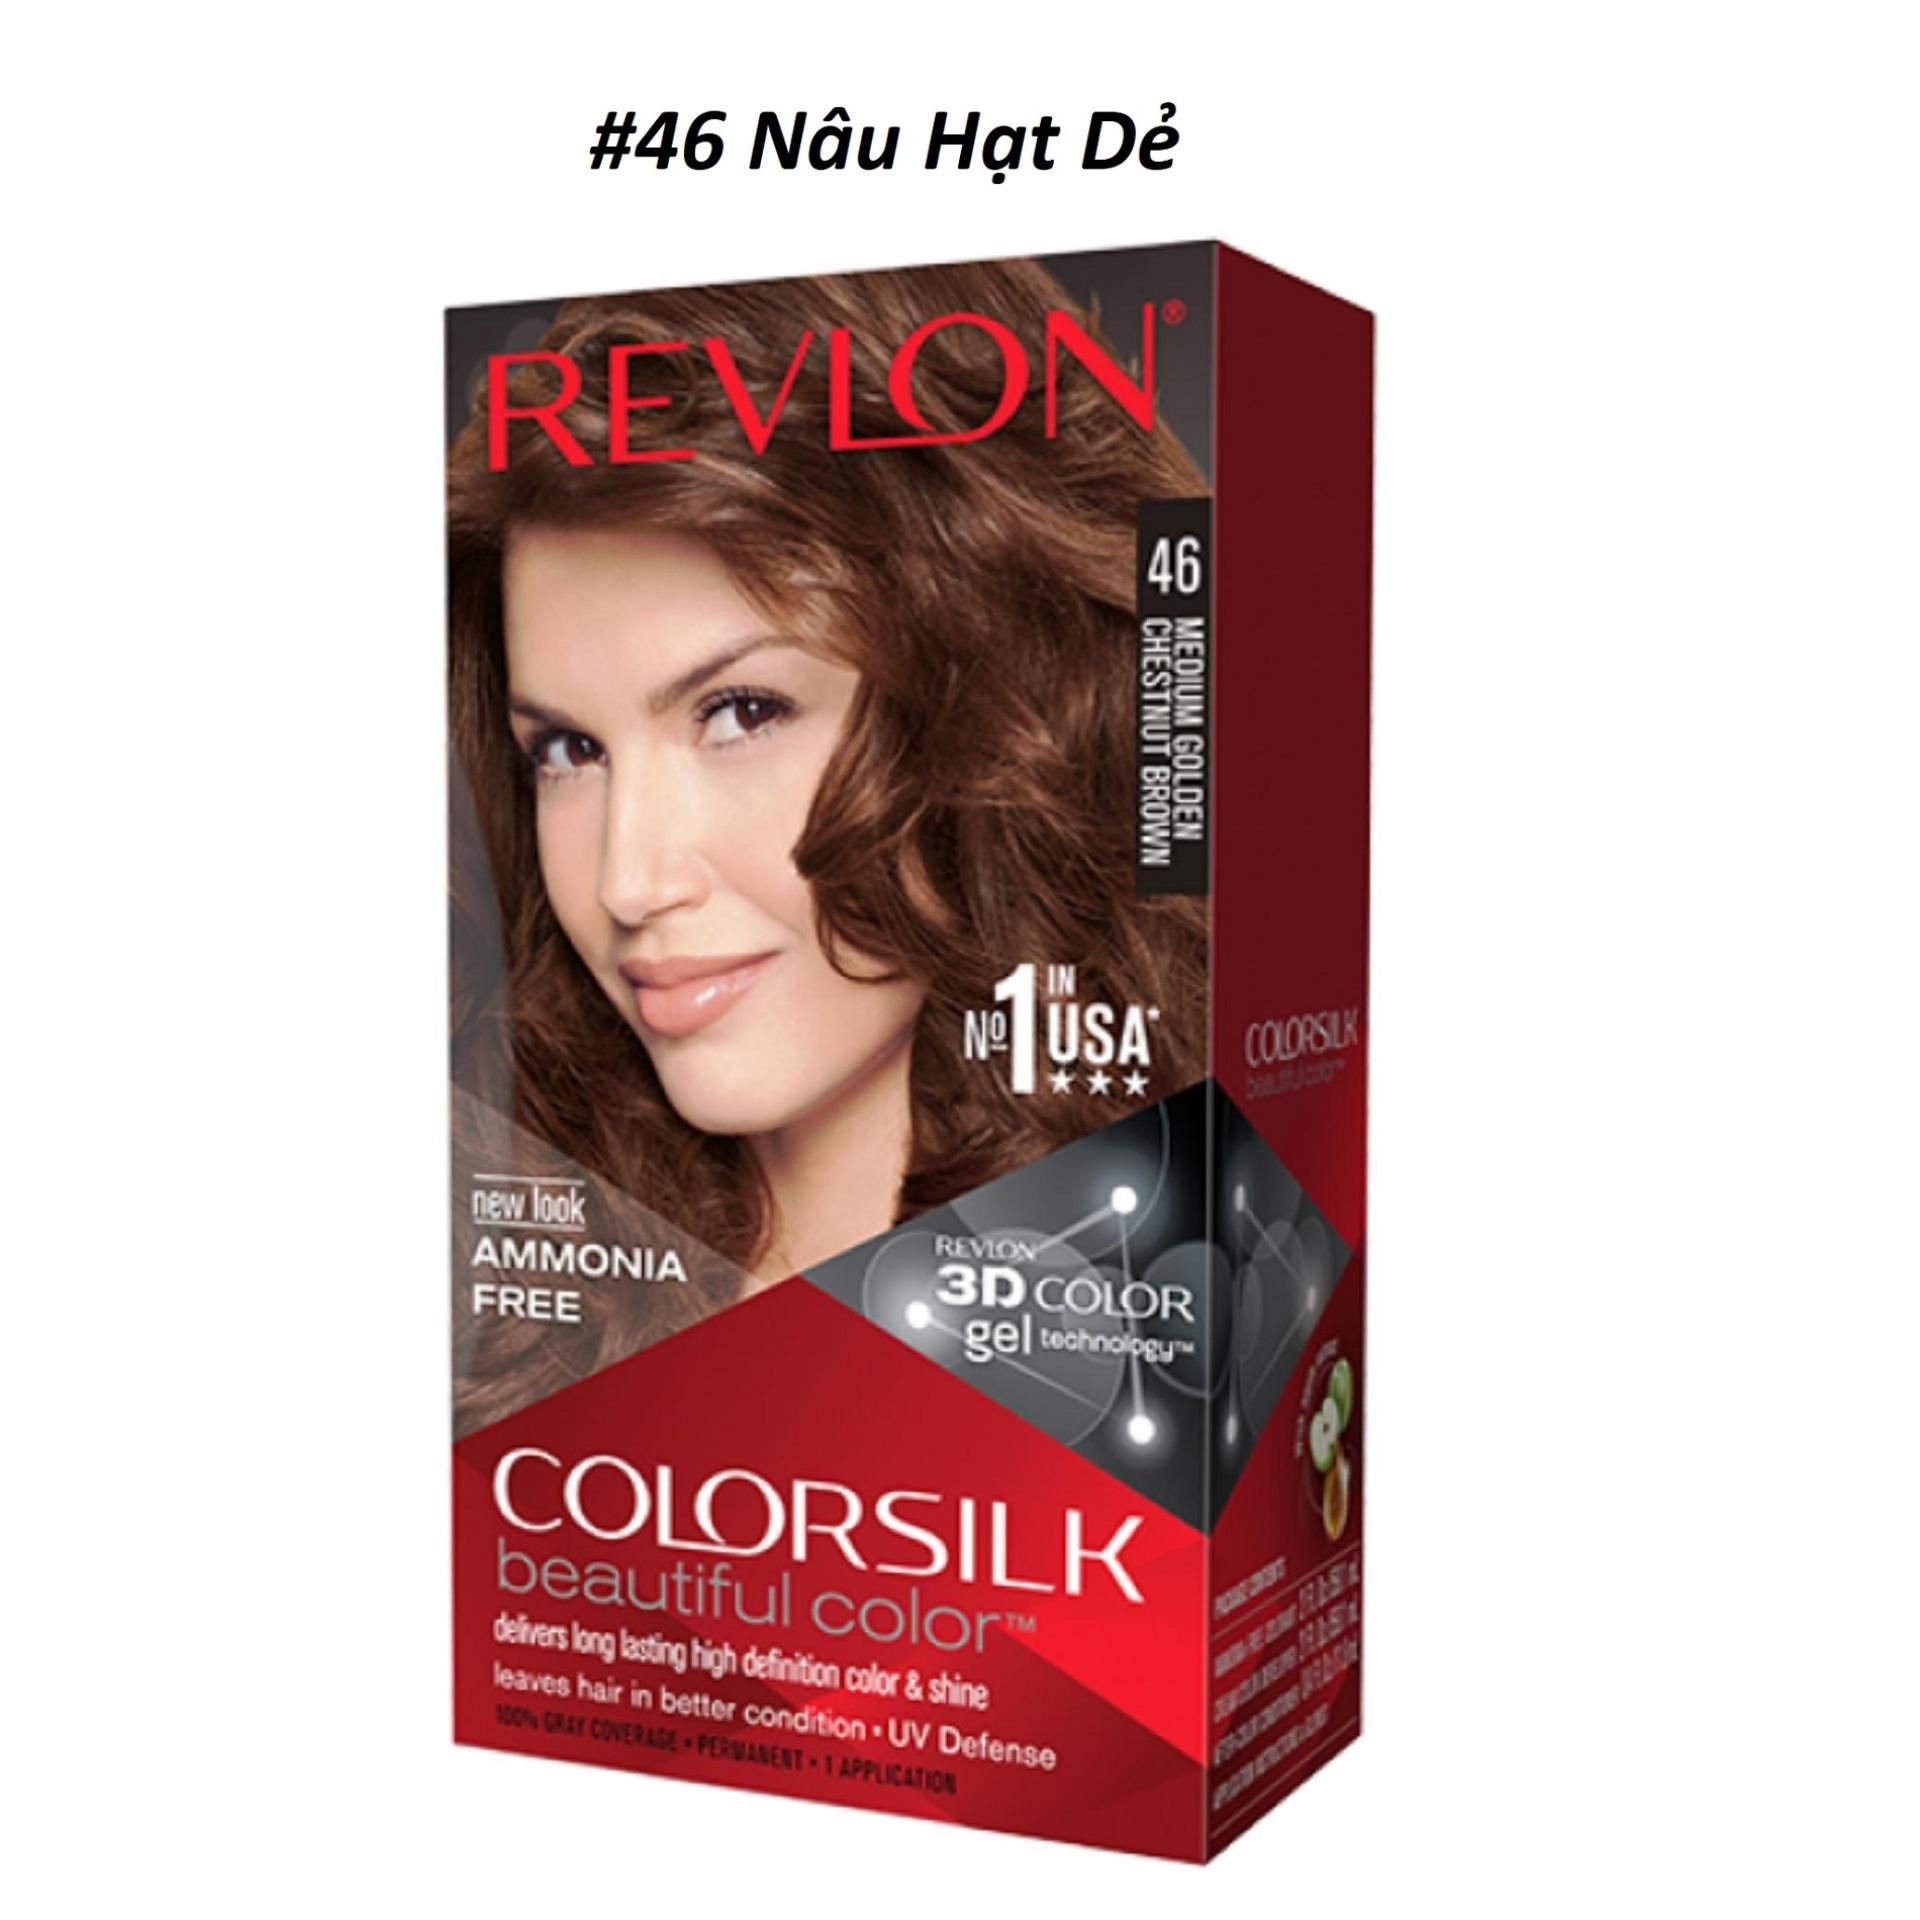 Revlon 3D Color Silk: Màu tóc sáng bóng và tràn đầy sức sống với Revlon 3D Color Silk chắc chắn sẽ khiến bạn thích thú. Với công thức độc đáo mang lại hiệu ứng thích hợp hơn cho phù hợp với màu da, tạo nên sự tự tin lấp lánh từ bên trong.